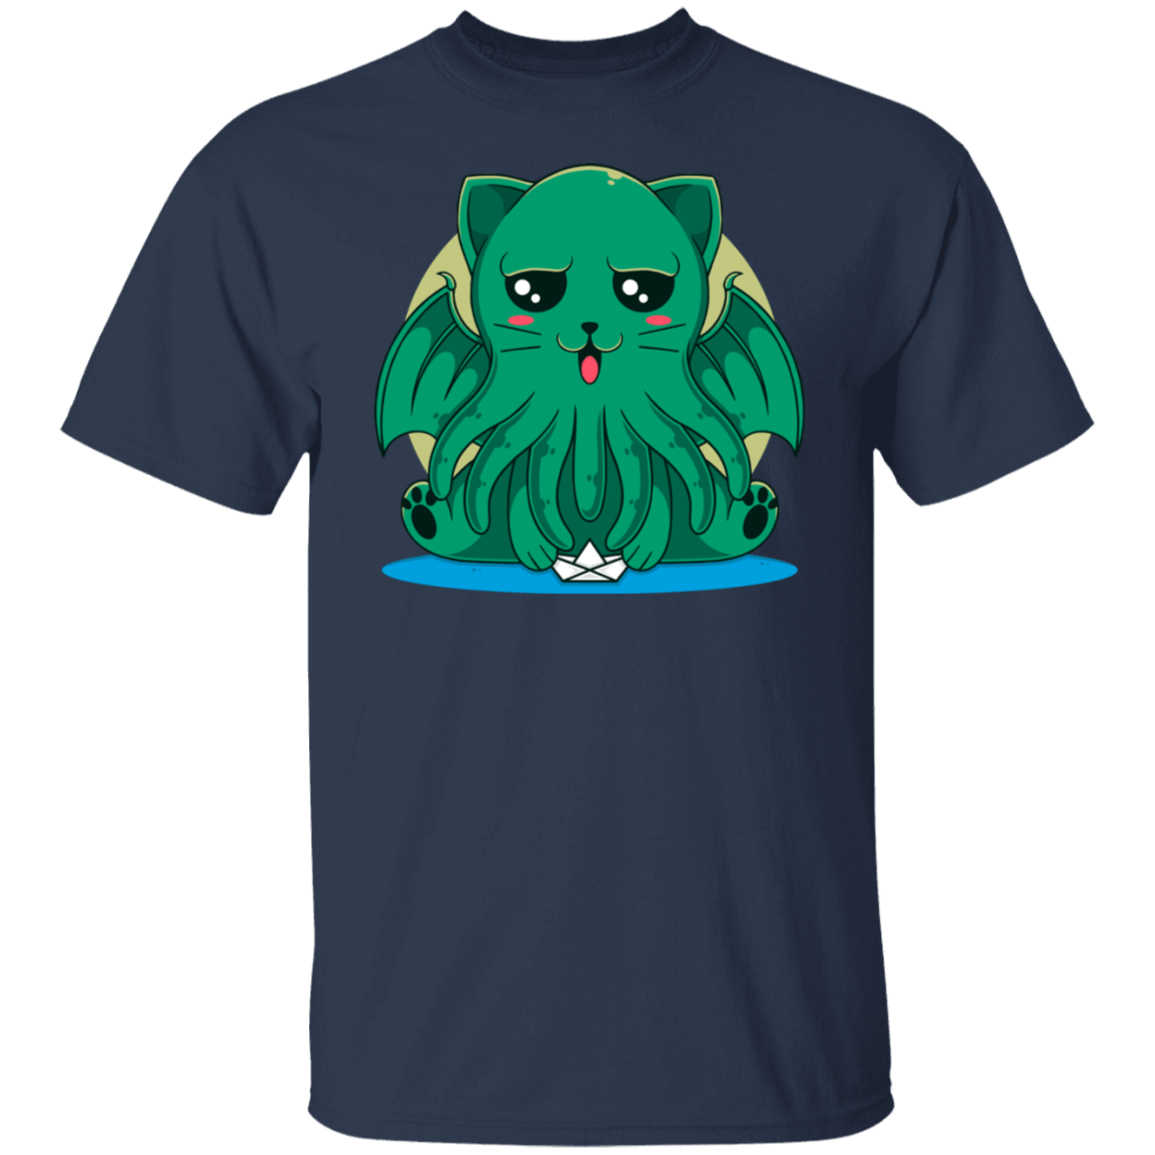 T-Shirts Navy / S Cathulhu T-Shirt